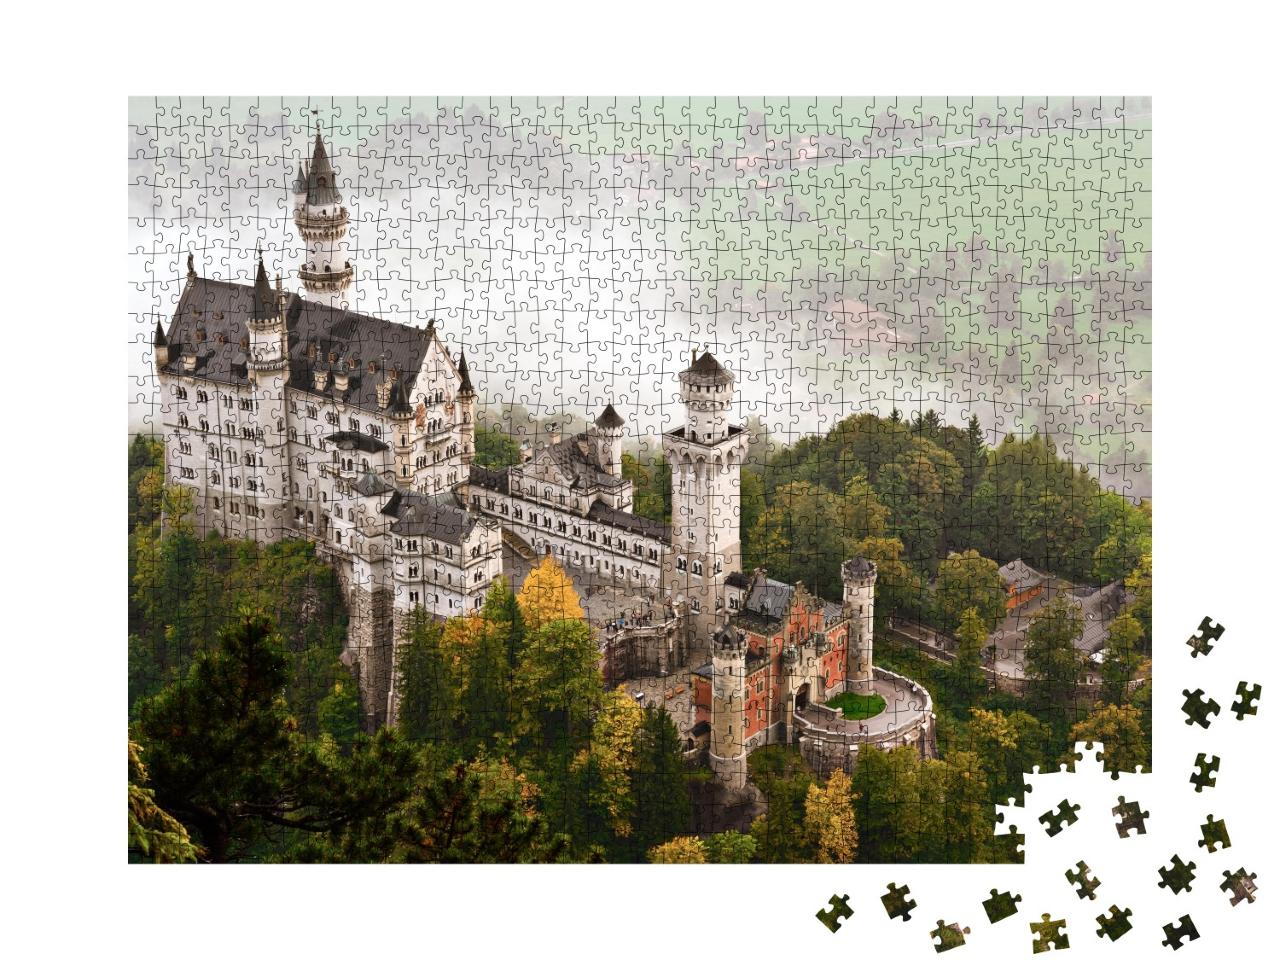 Puzzle 1000 Teile „Schloss Neuschwanstein im Nebel, Bayern“